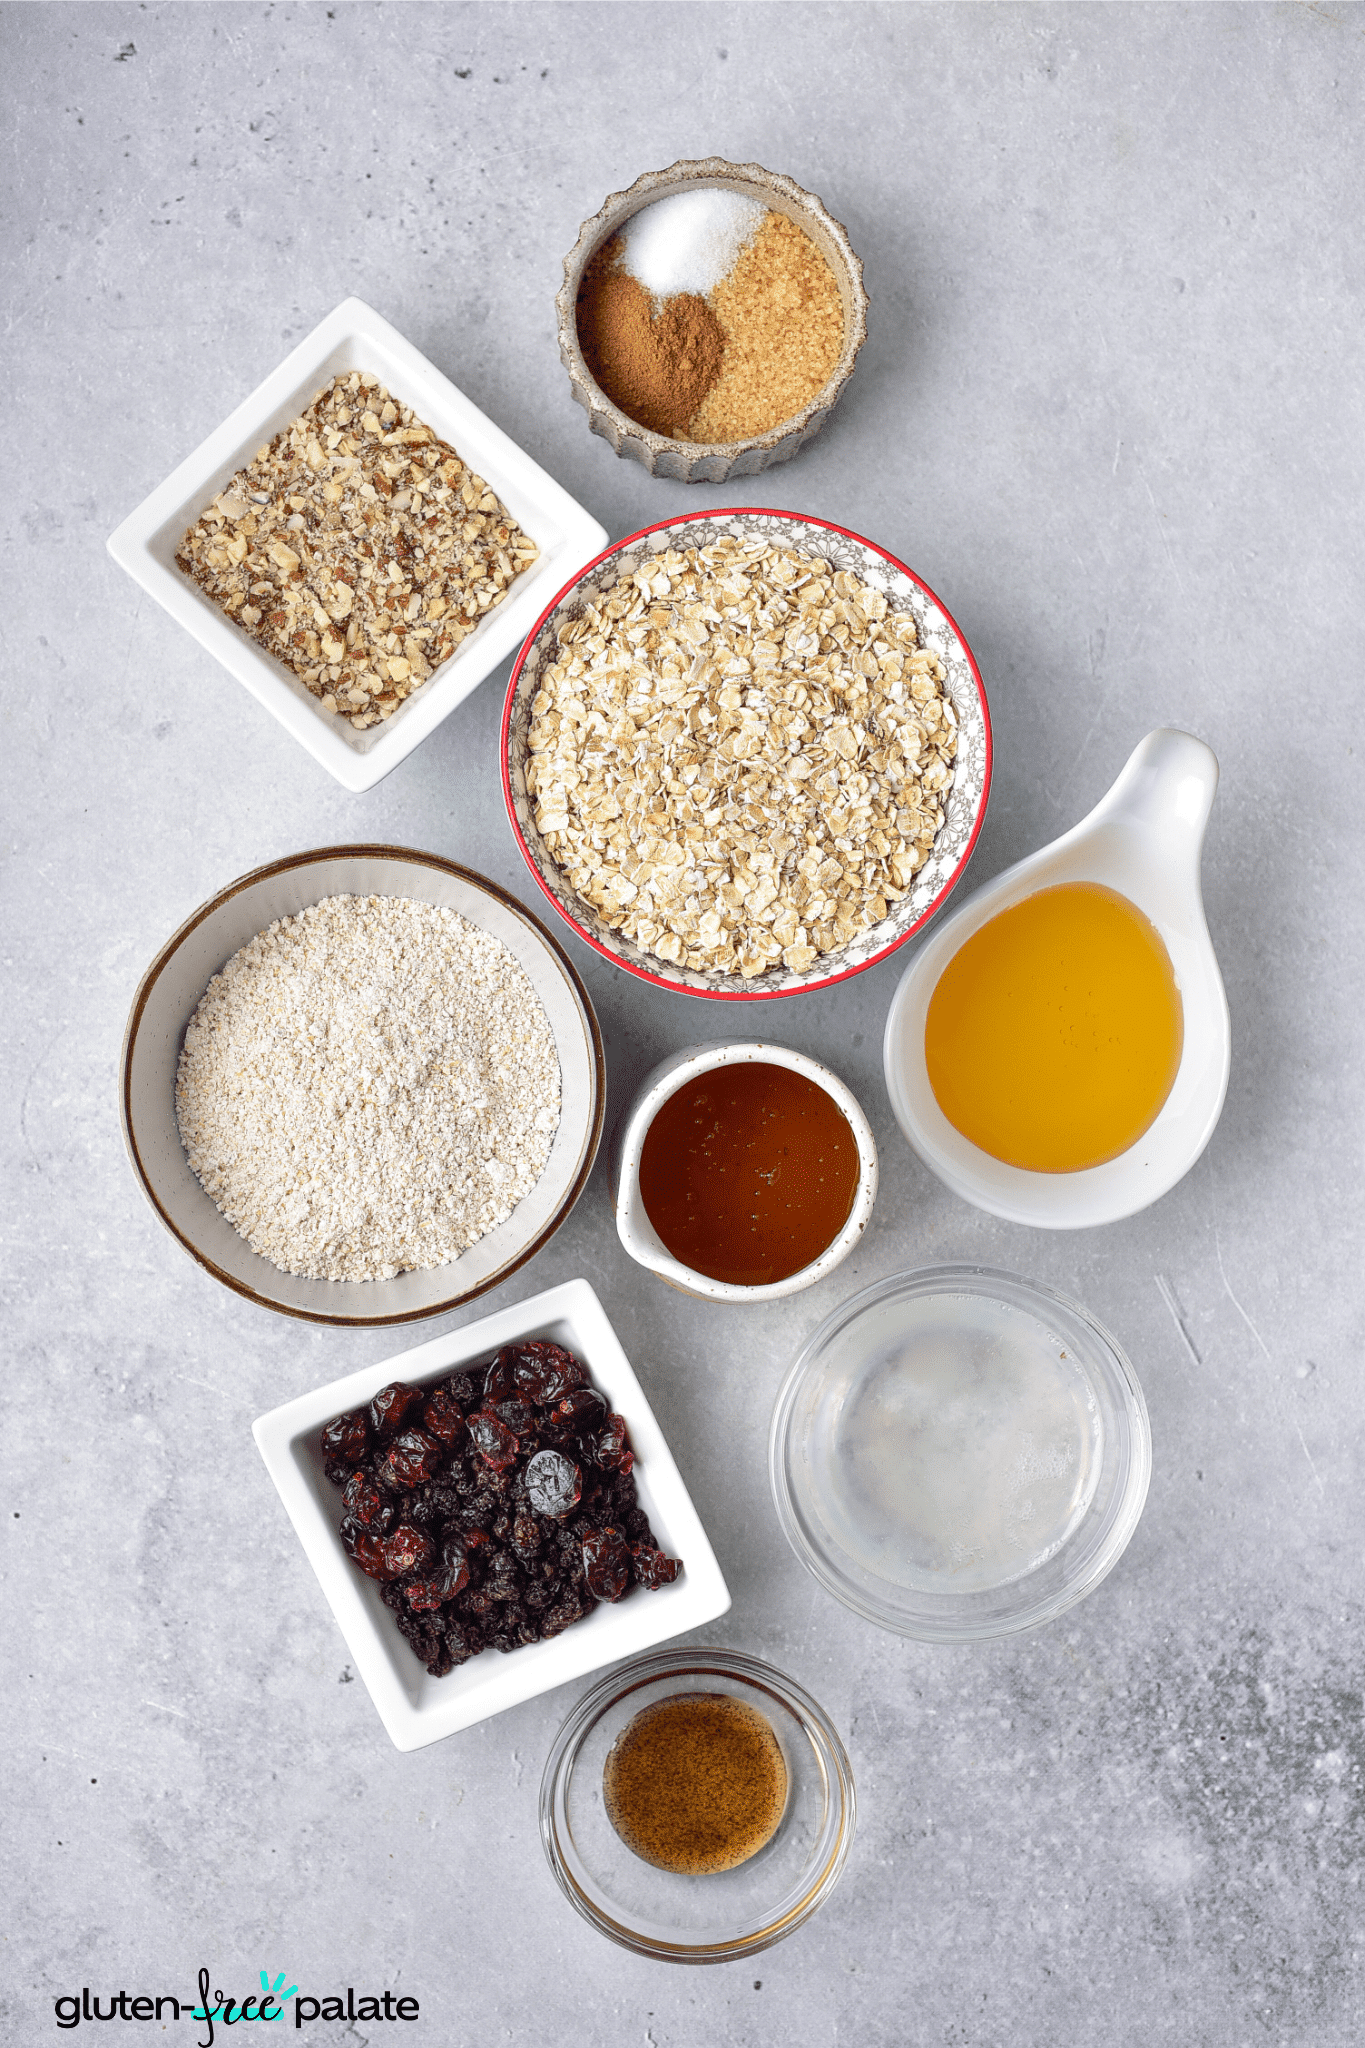 Gluten-free granola bars ingredients.